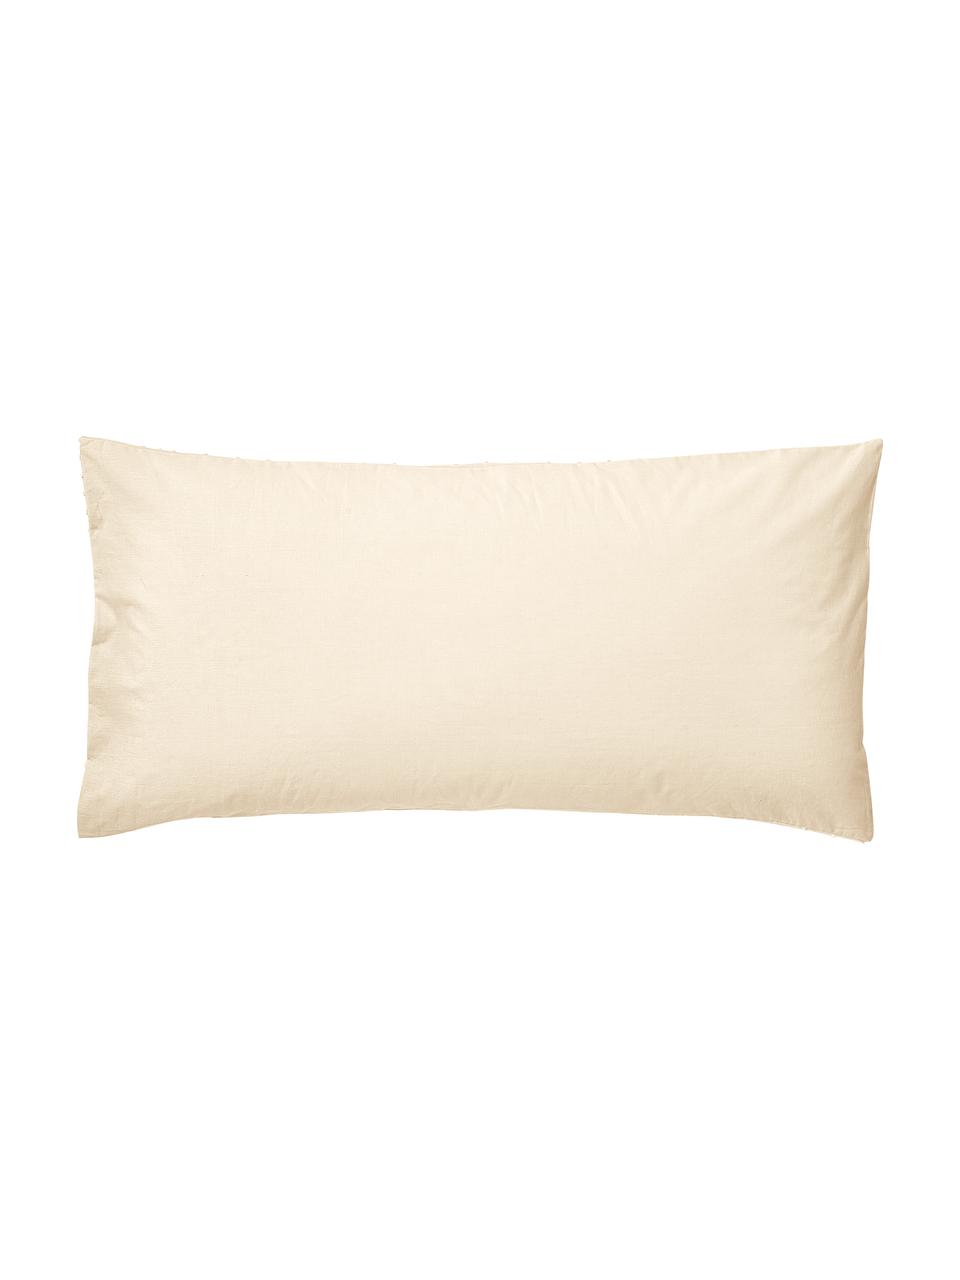 Poszewka na poduszkę z bawełny plumeti Aloide, 2 szt., Pastelowy żółty, S 40 x D 80 cm